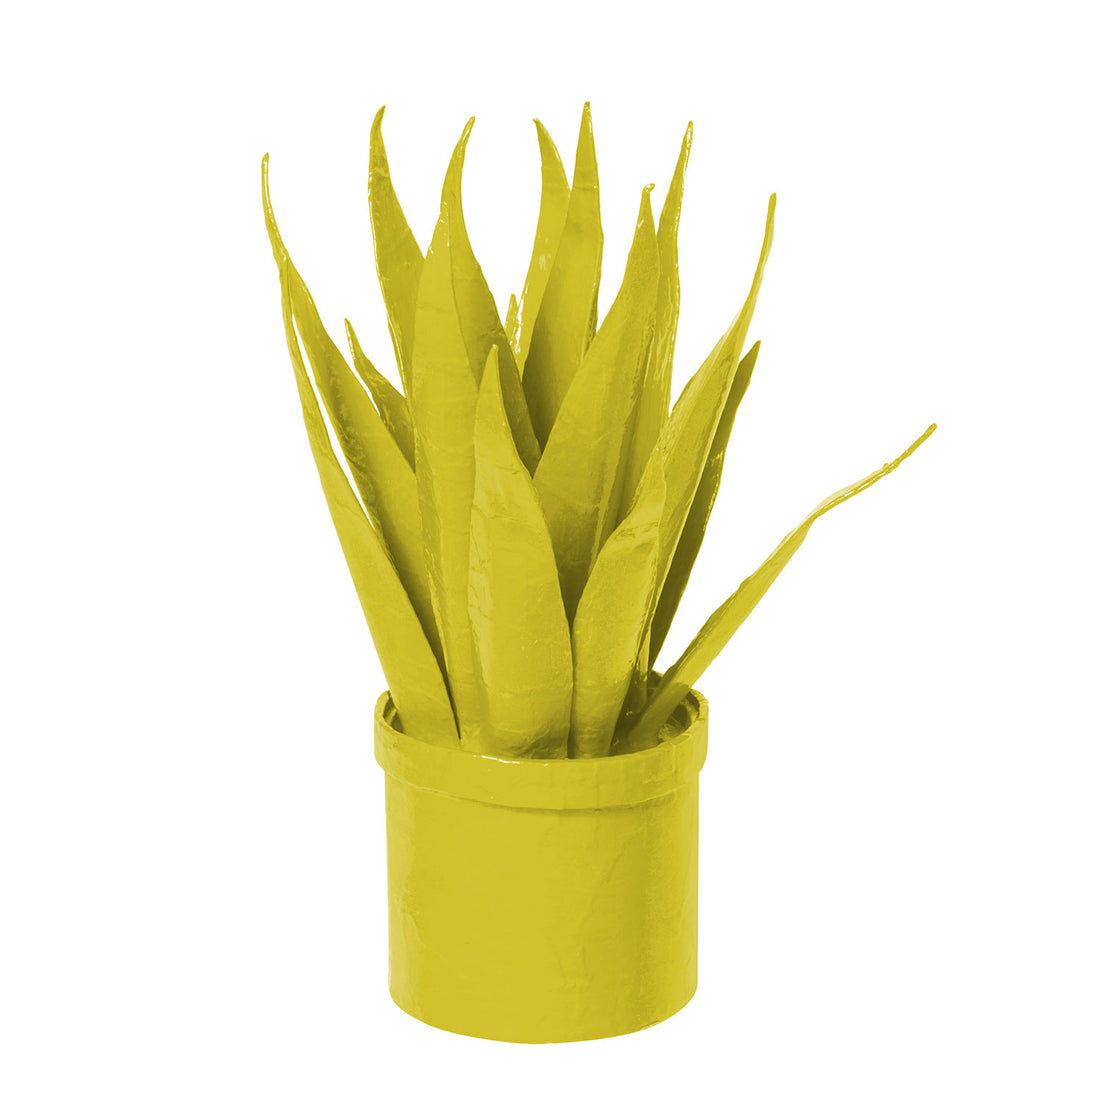 Spiky chartreuse papier mache house plant